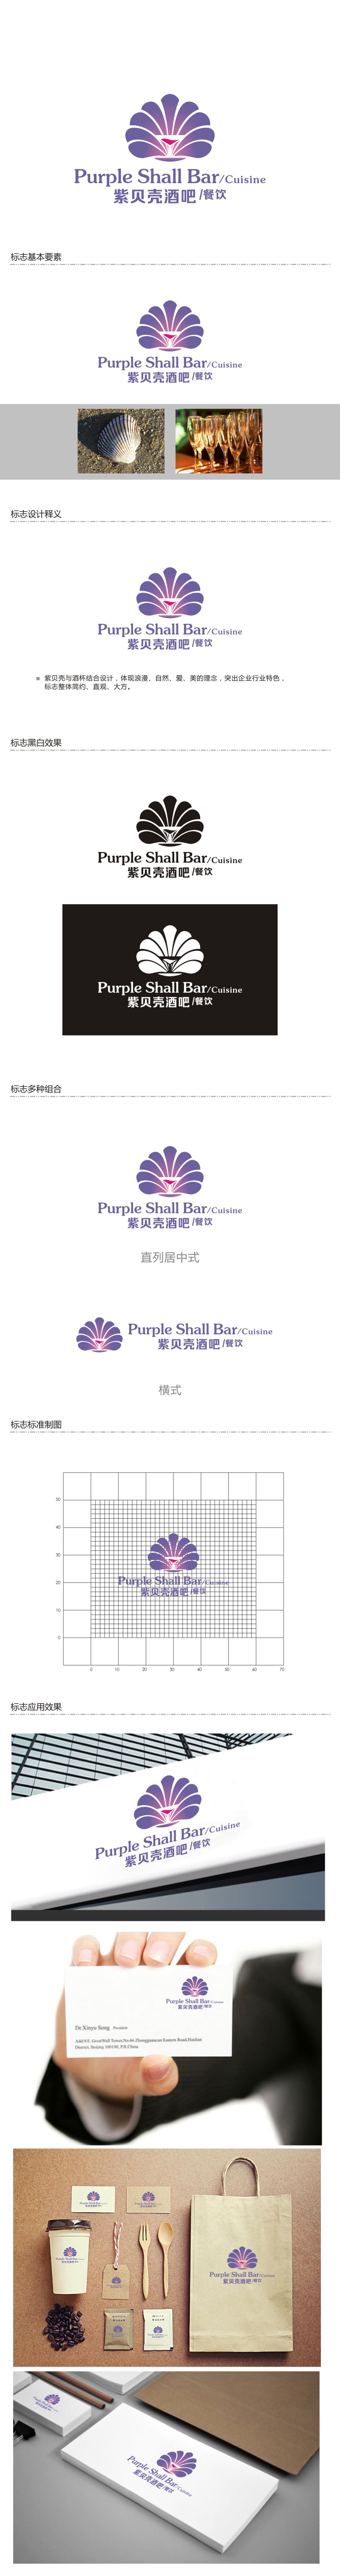 曾翼的紫贝壳酒吧/餐饮Purple shall bar/cuisinelogo设计